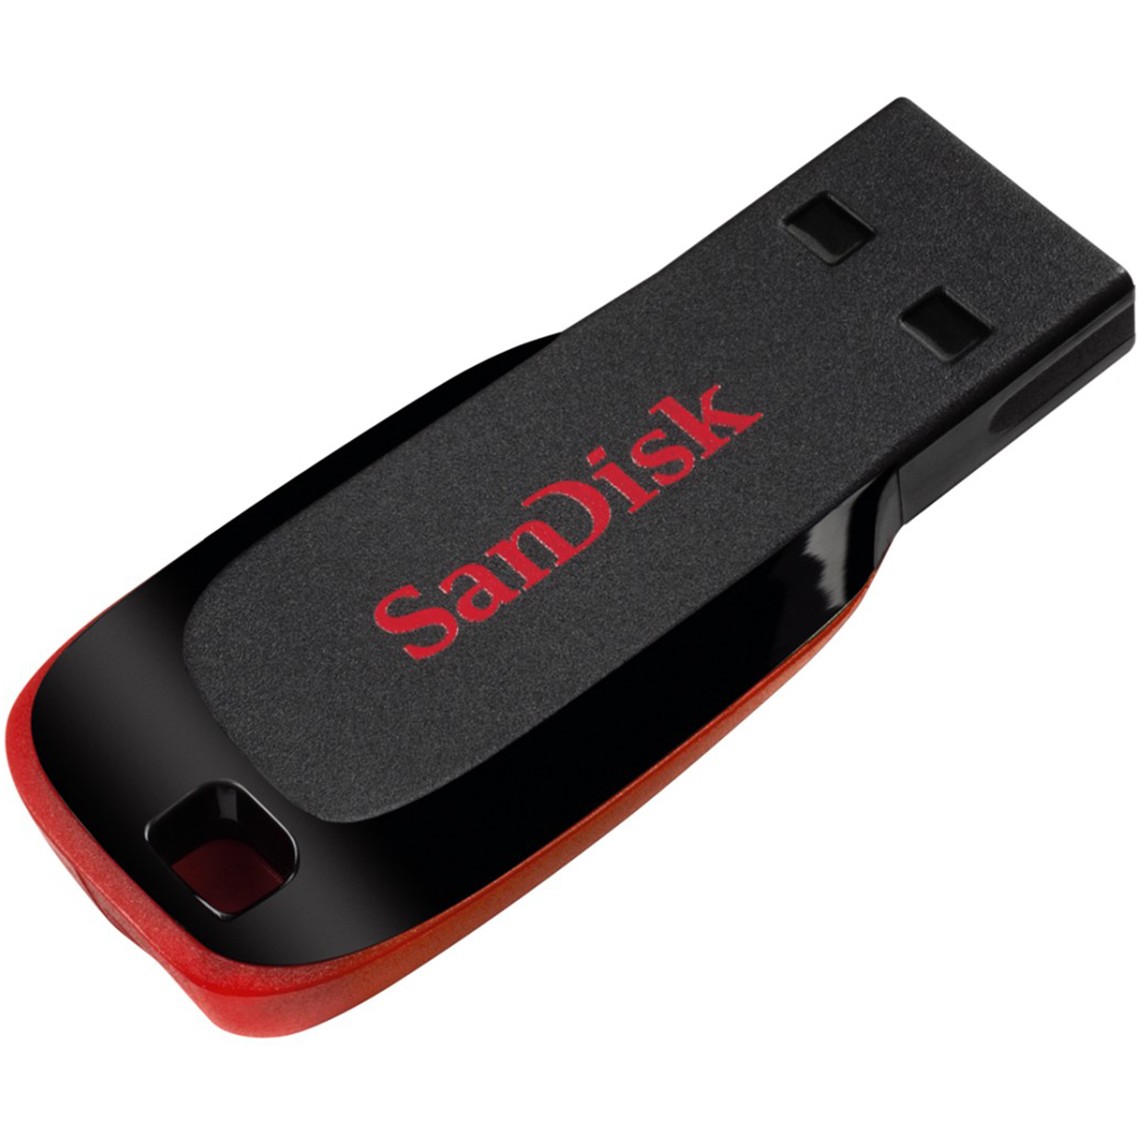 Sandisk SDCZ50-032G-B35, USB-Stick, SanDisk Cruzer Blade  (BILD2)